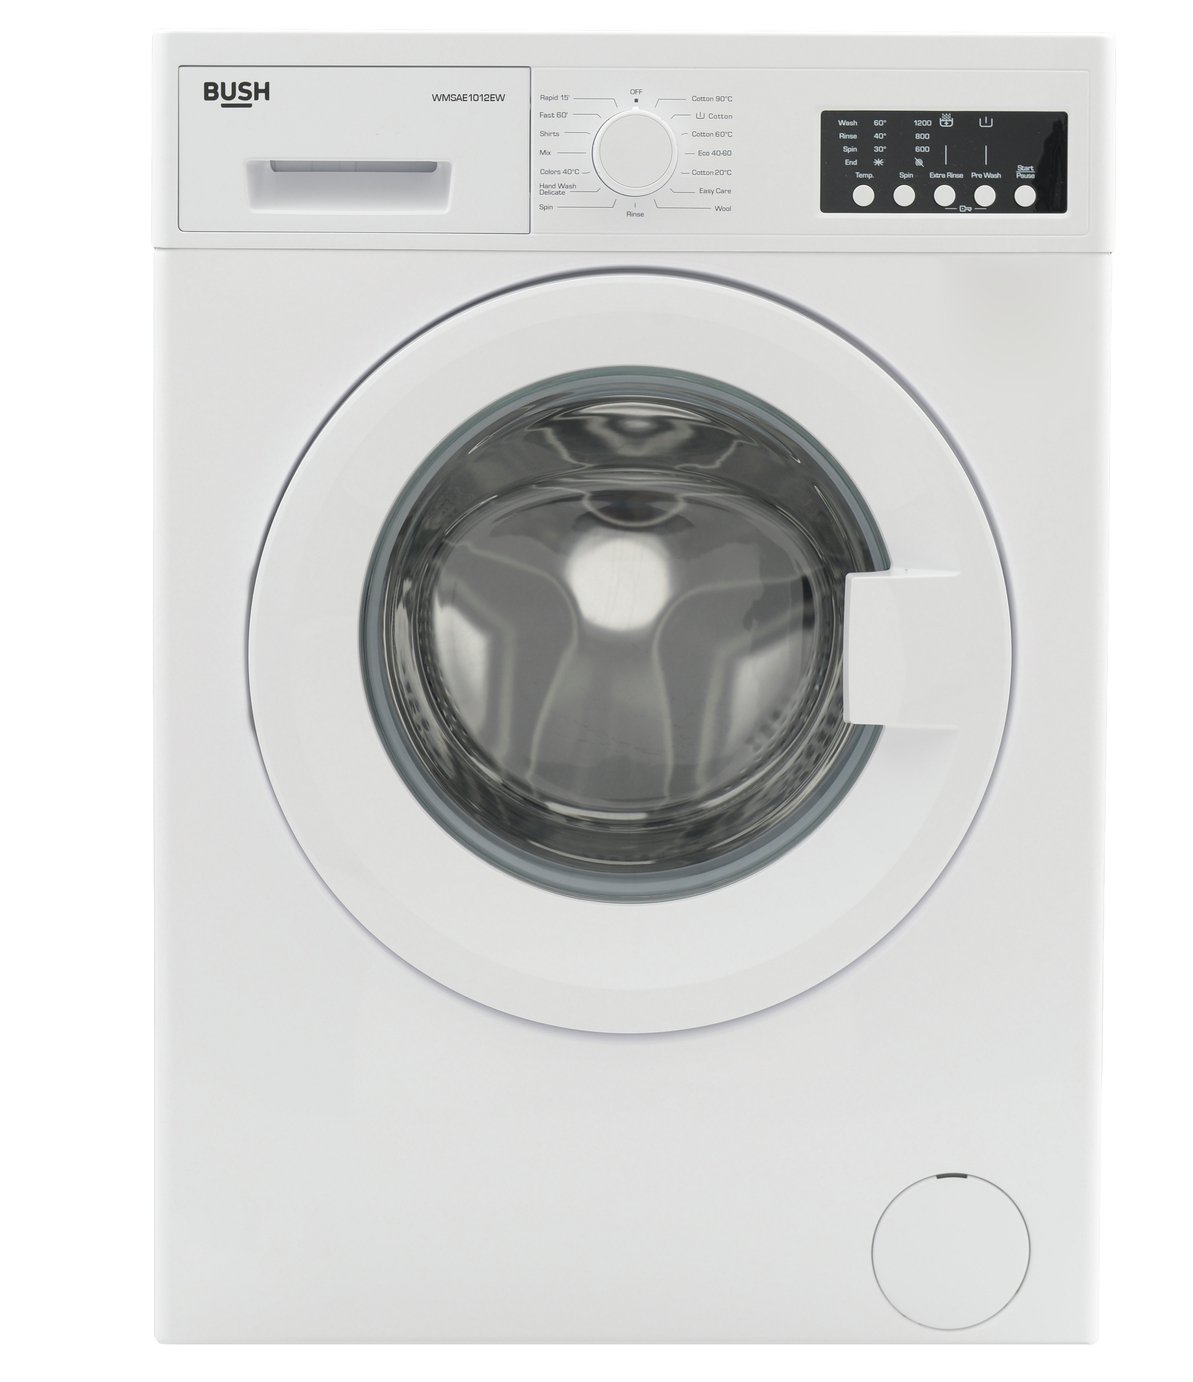 Bush WMSAE1012EW 10KG 1200 Spin Washing Machine - White